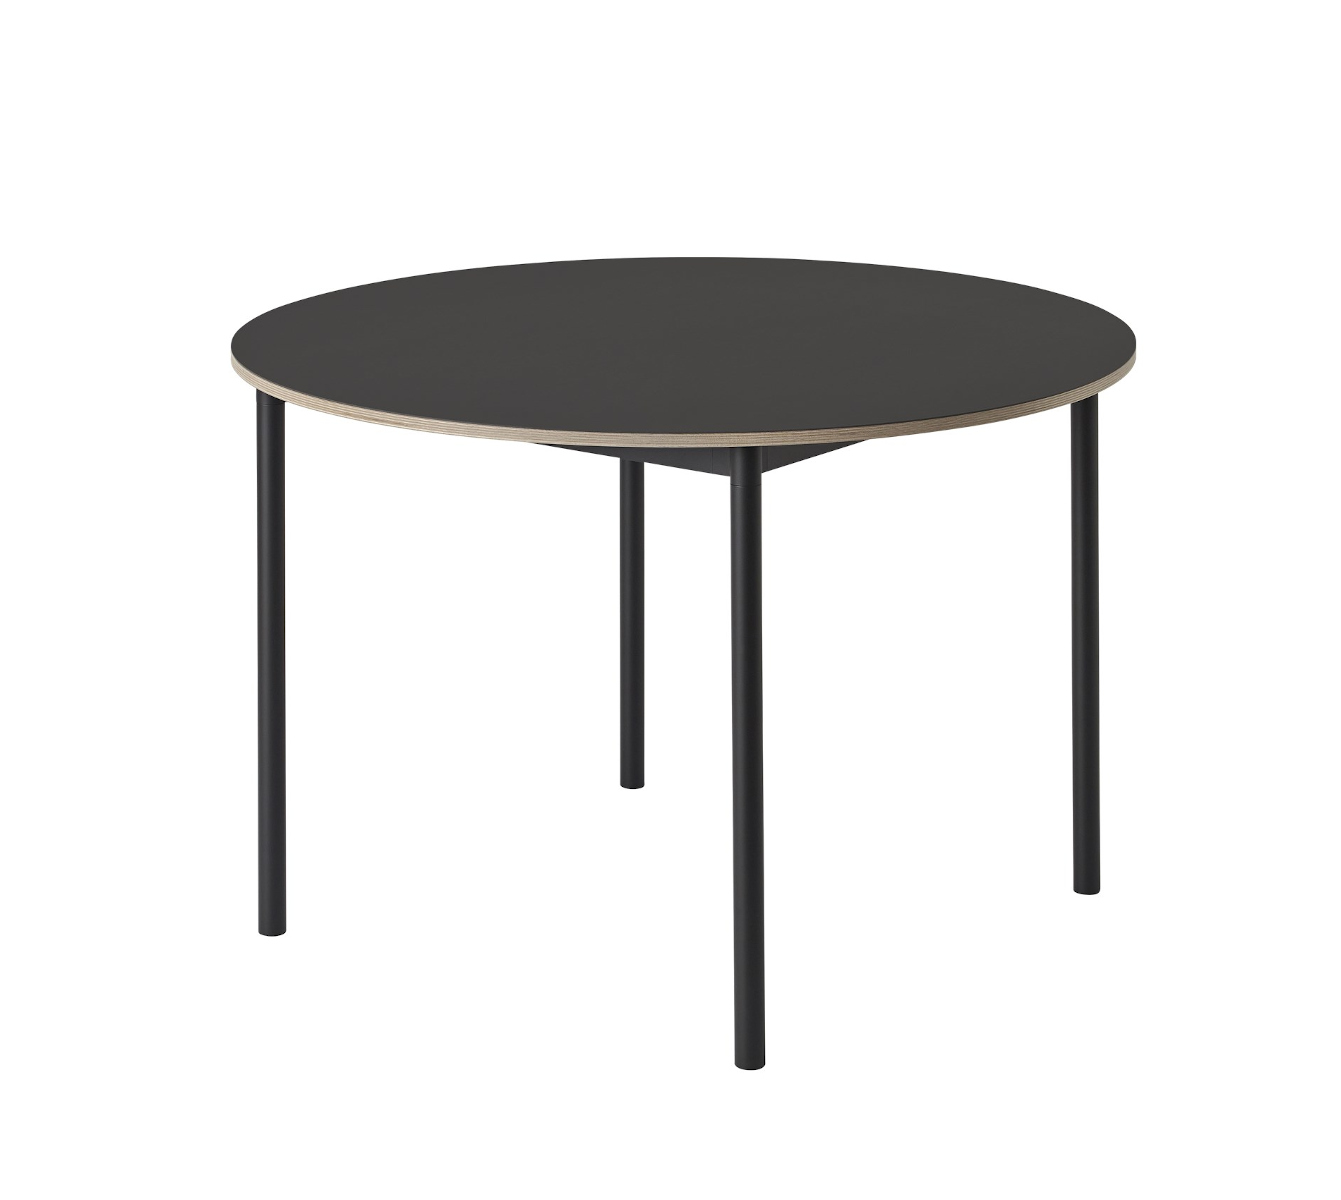 Base Tisch rund, Ø 110 cm, schwarz laminat / schwarz